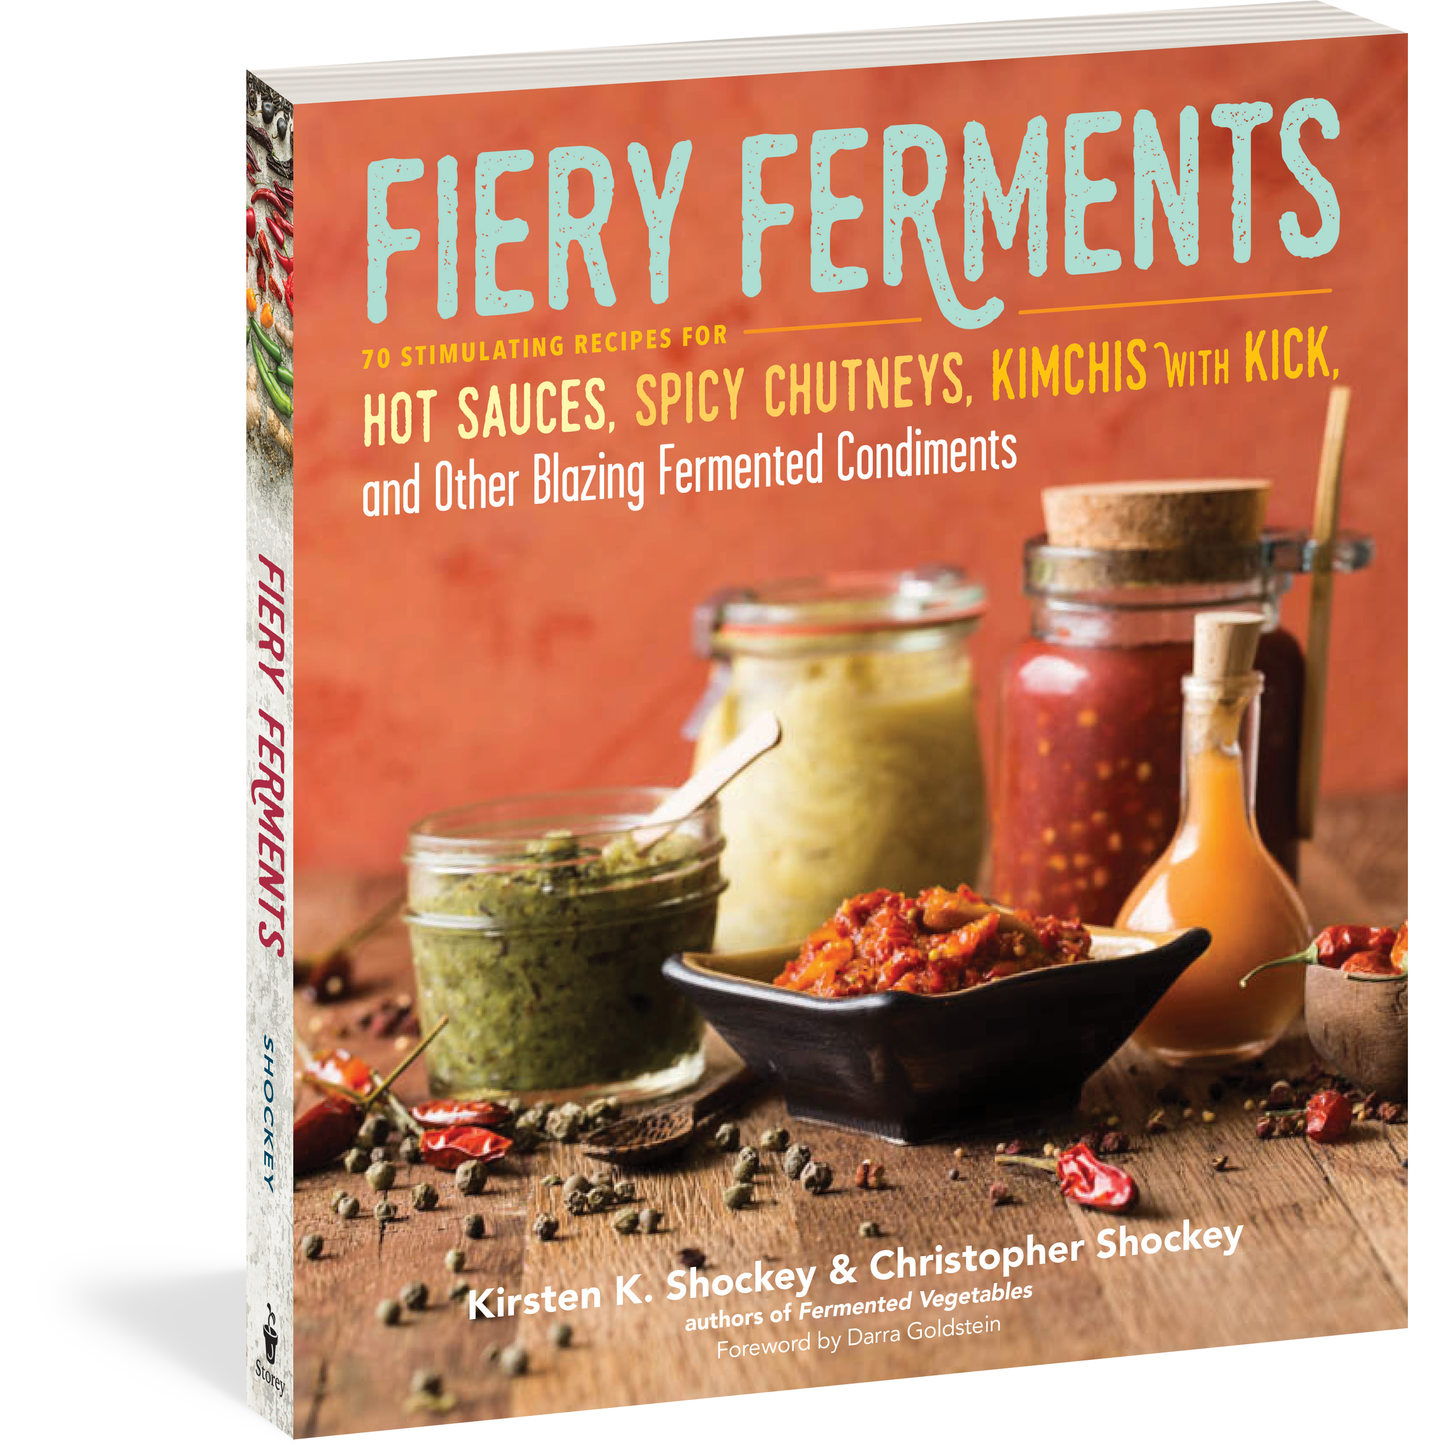 Fiery Ferments (Kirsten K. Shockey & Christopher Shockey)